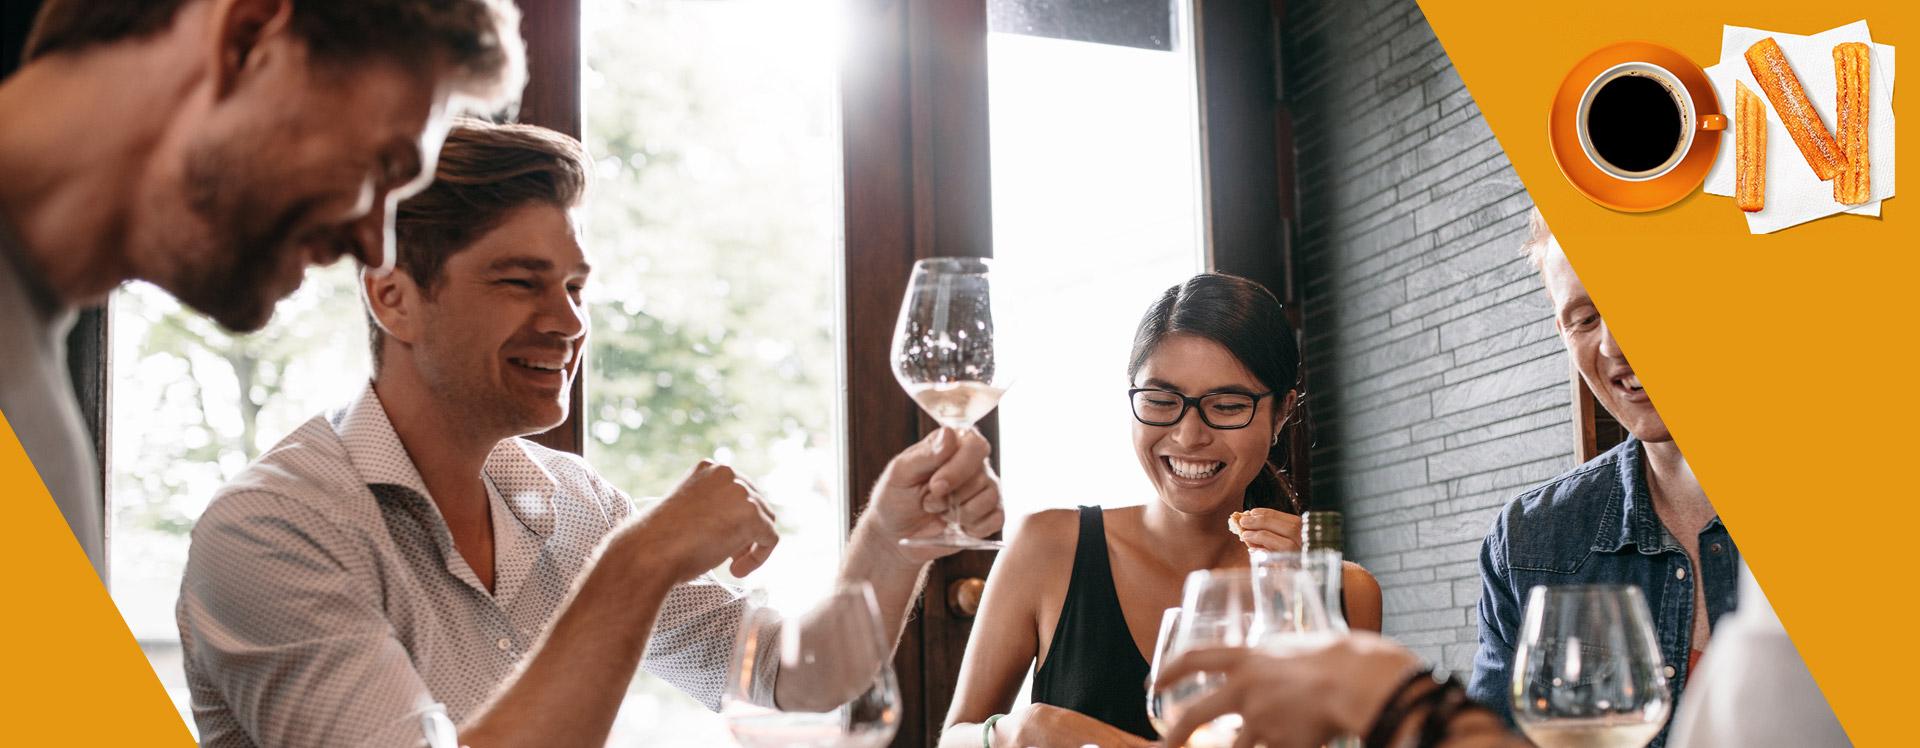 8 dicas para impressionar ao receber amigos no jantar